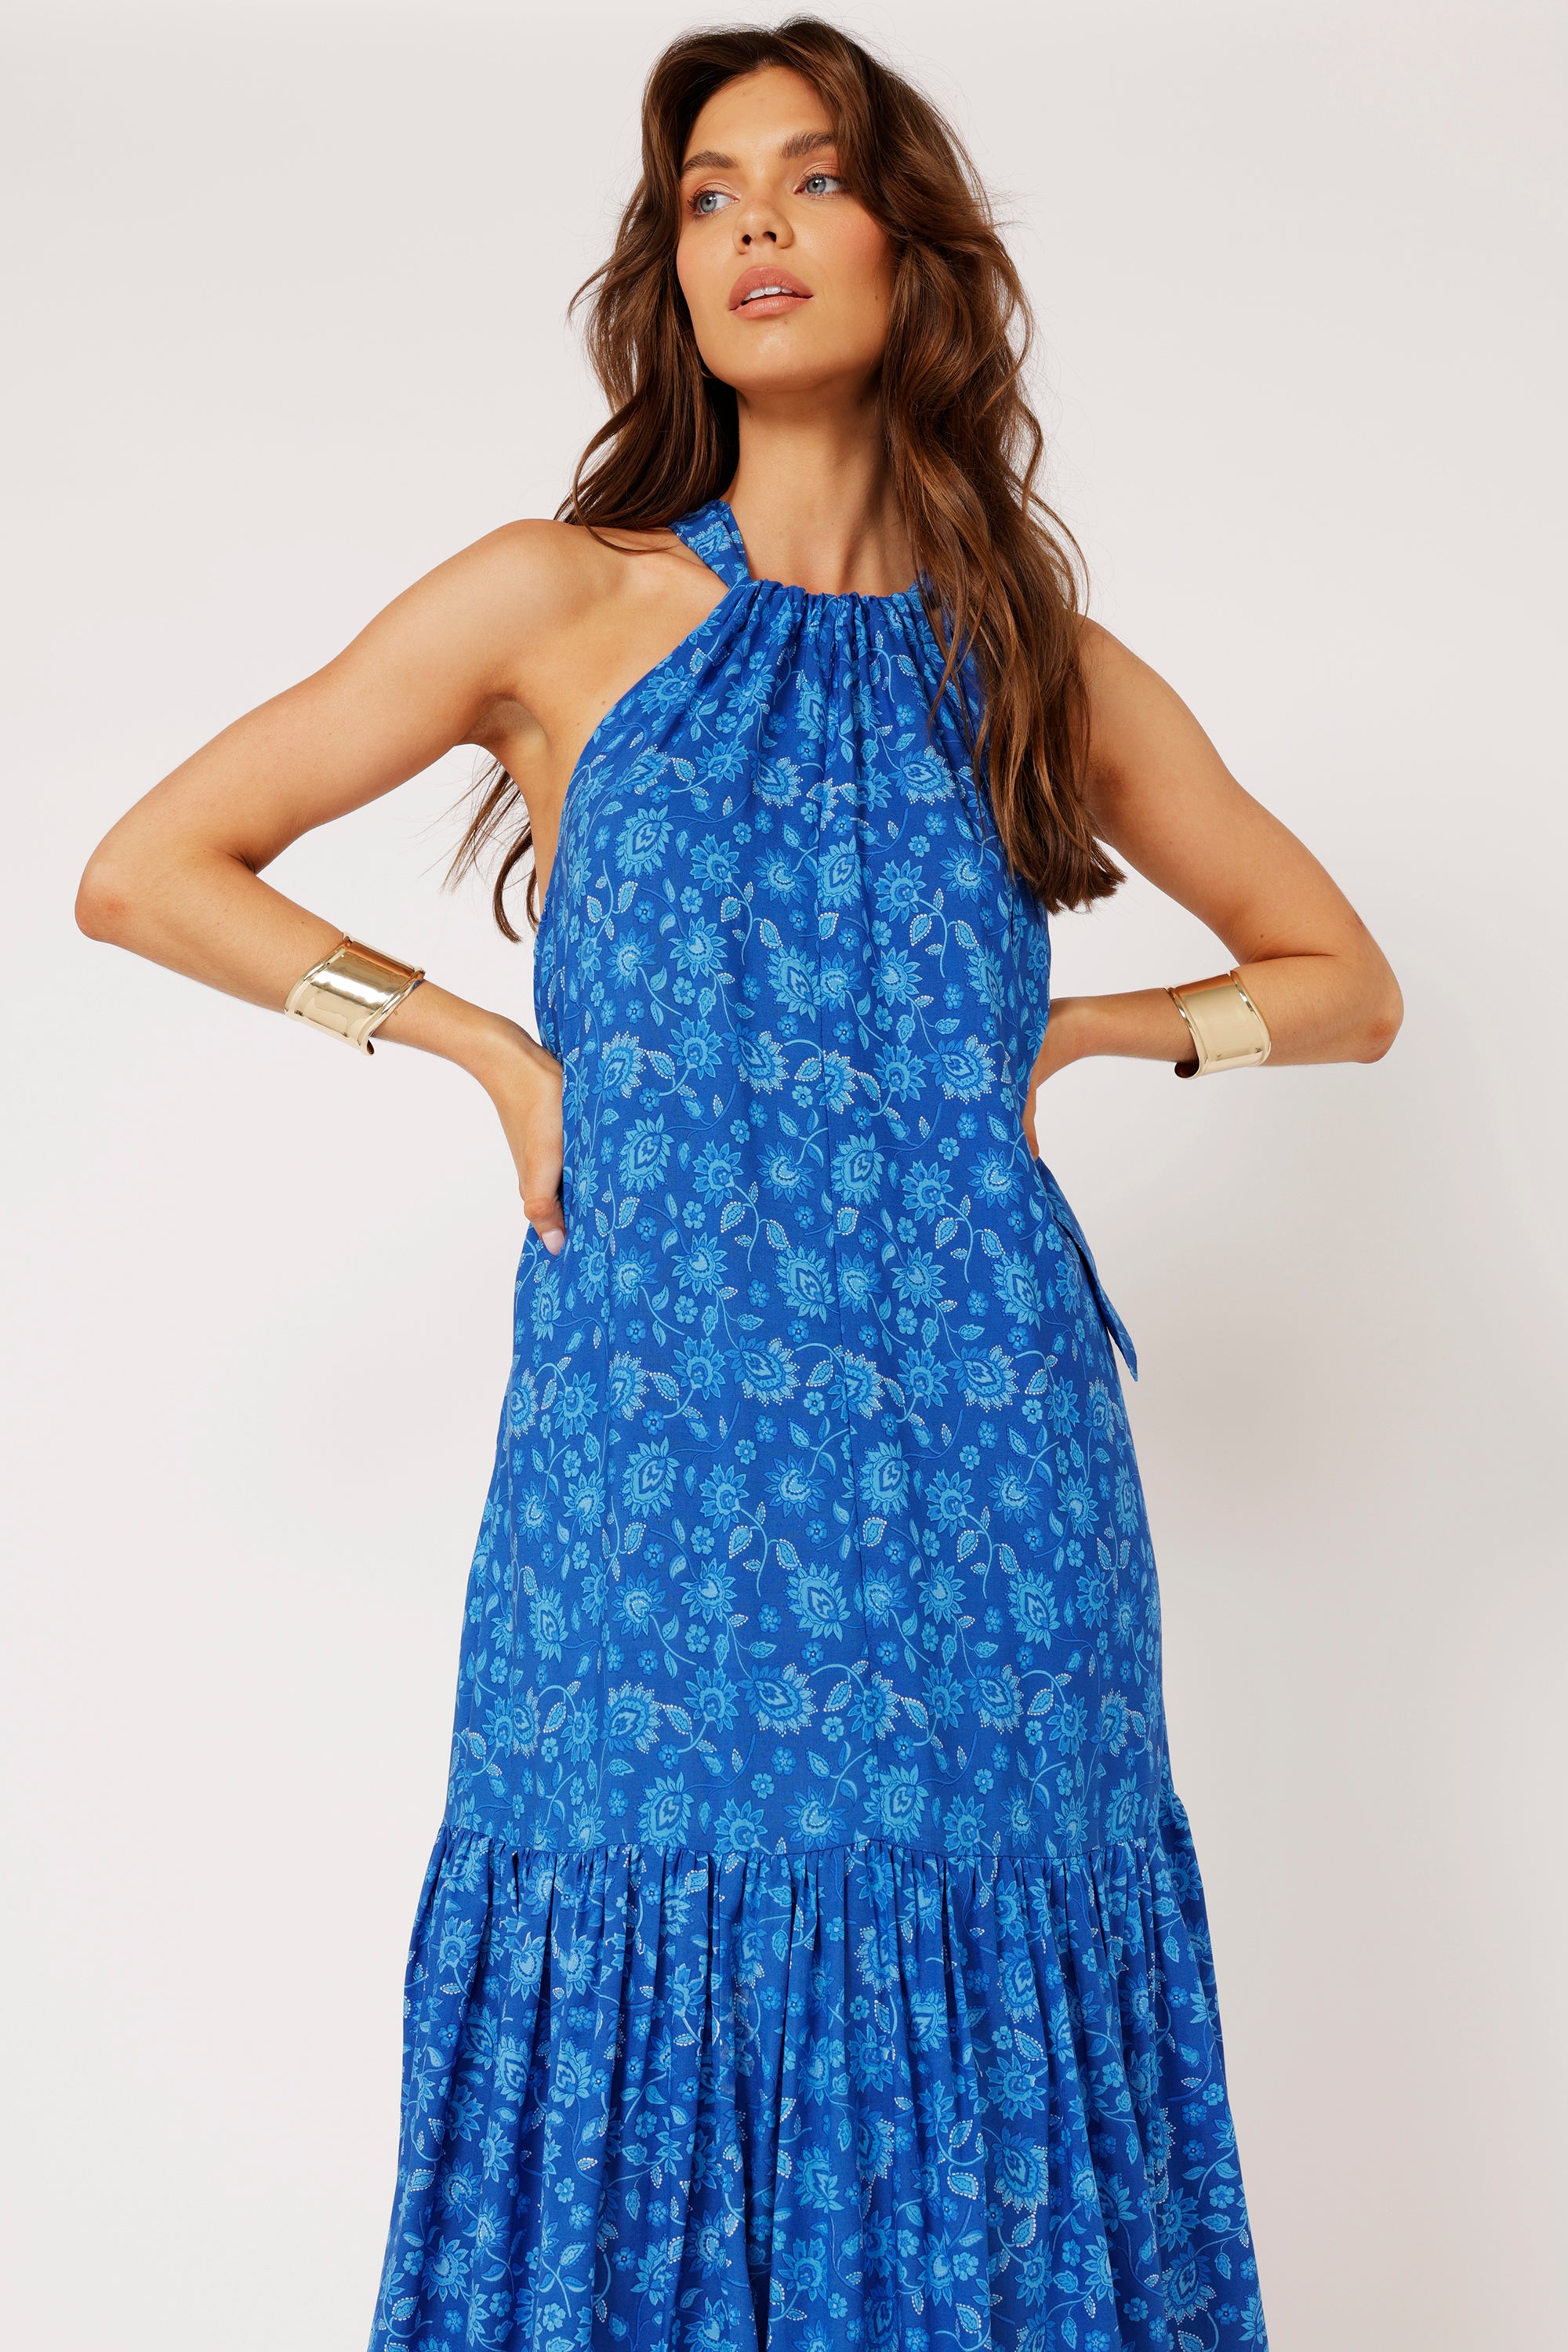 Saffron Road | Resort Dress | Maxi Dress | Blue Hawaii